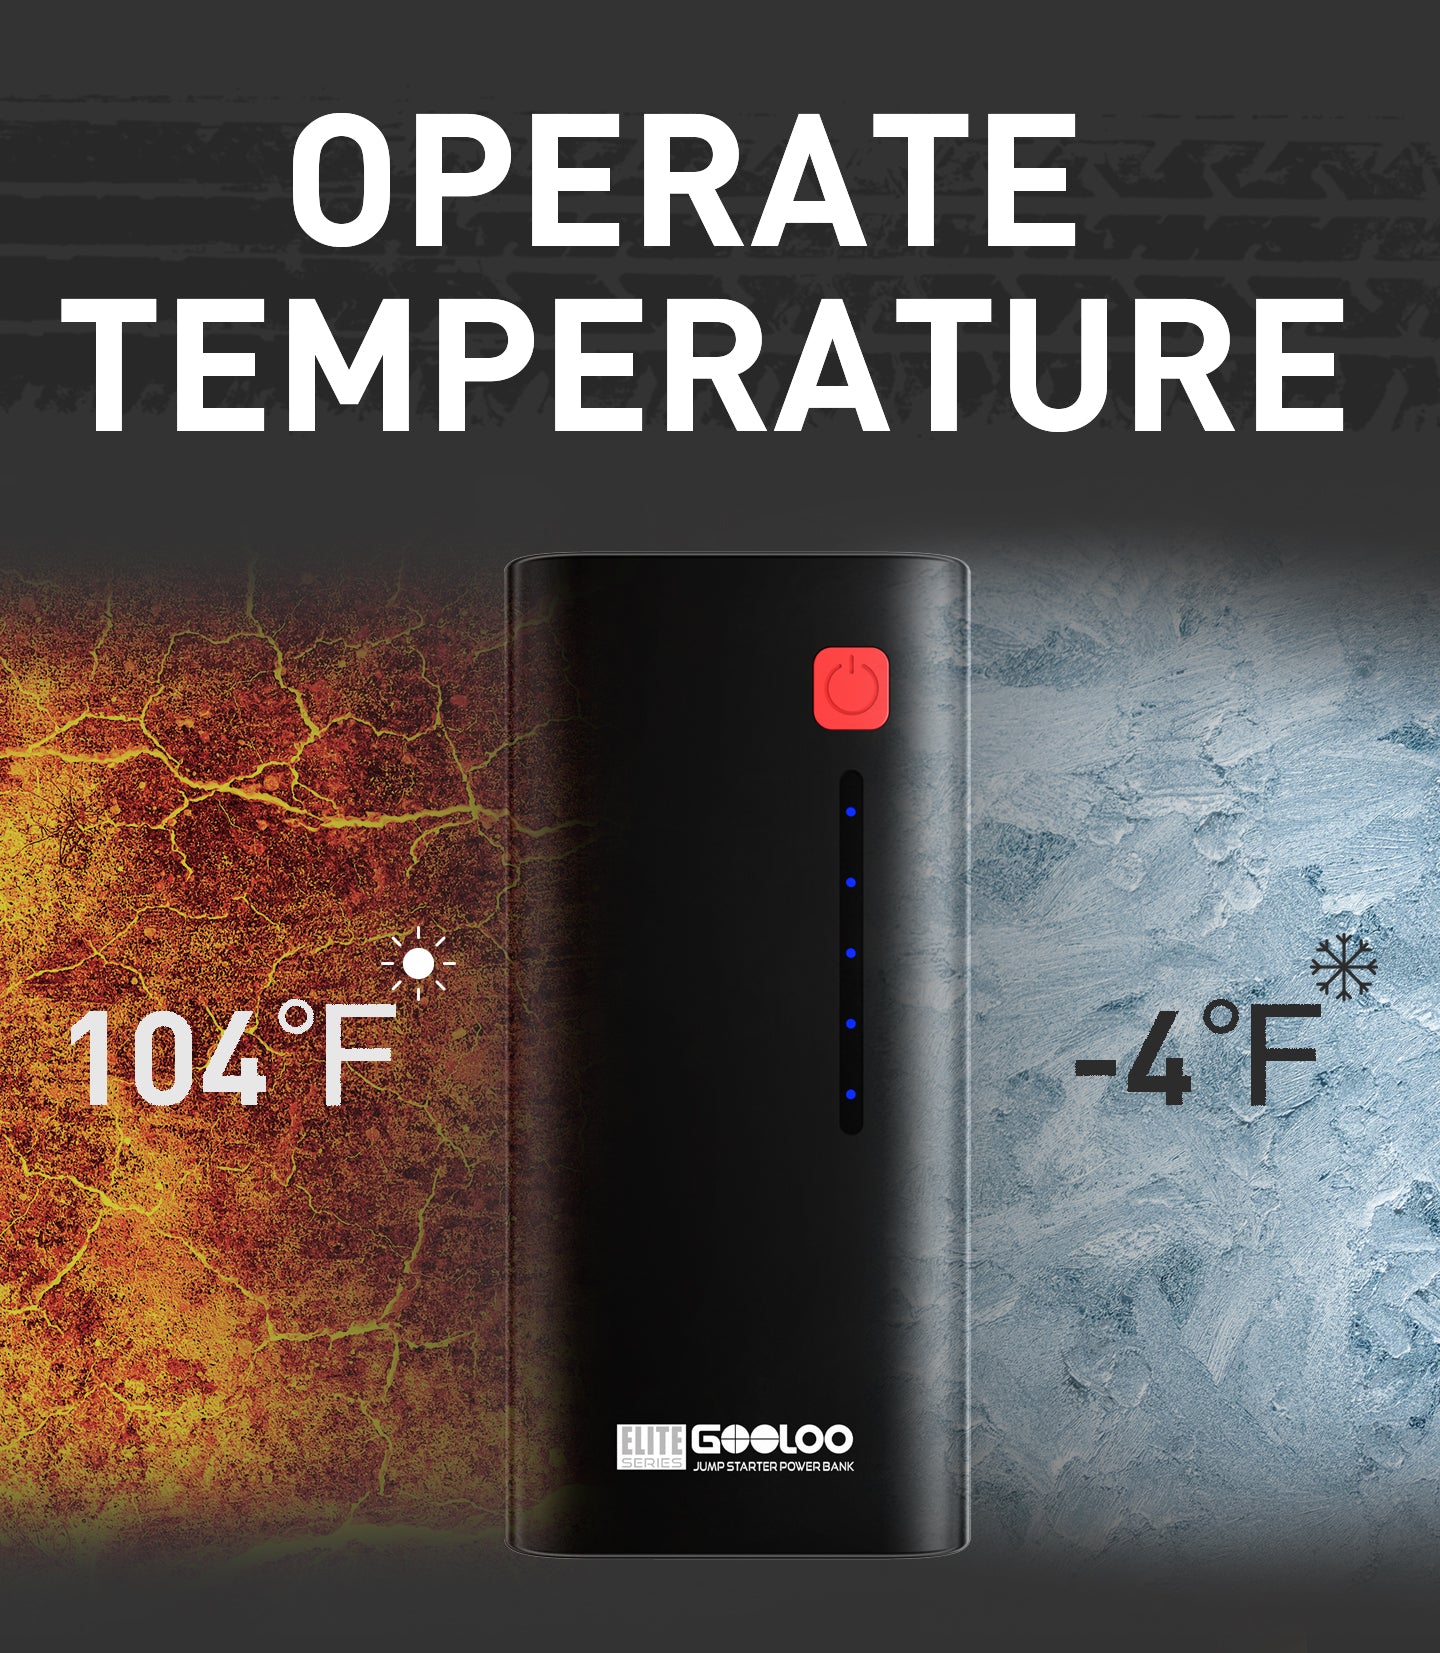 Operating temperature (-4℉-104℉)